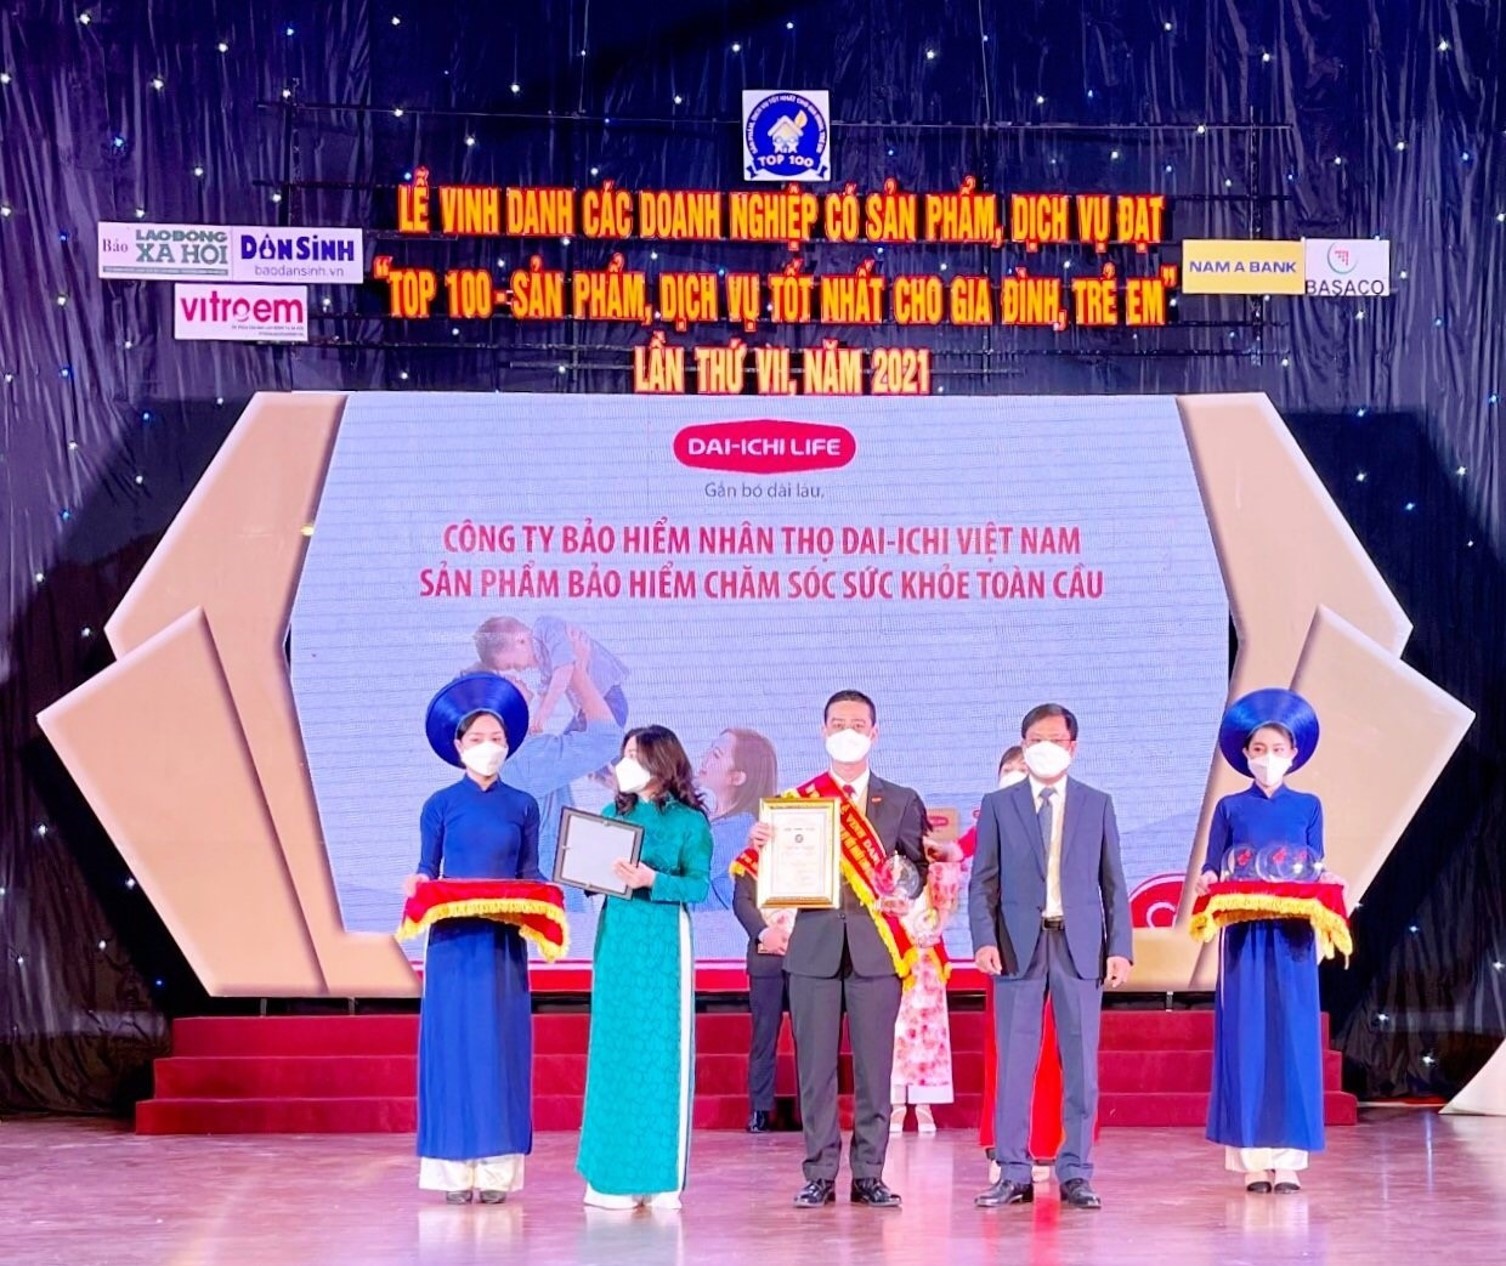 Ông Ngô Việt Phương - Phó Tổng Giám đốc Kinh doanh Dai-ichi Life Việt Nam nhận giải thưởng "Top 100 - Sản phẩm, Dịch vụ tốt nhất cho Gia đình, Trẻ em" năm 2021.